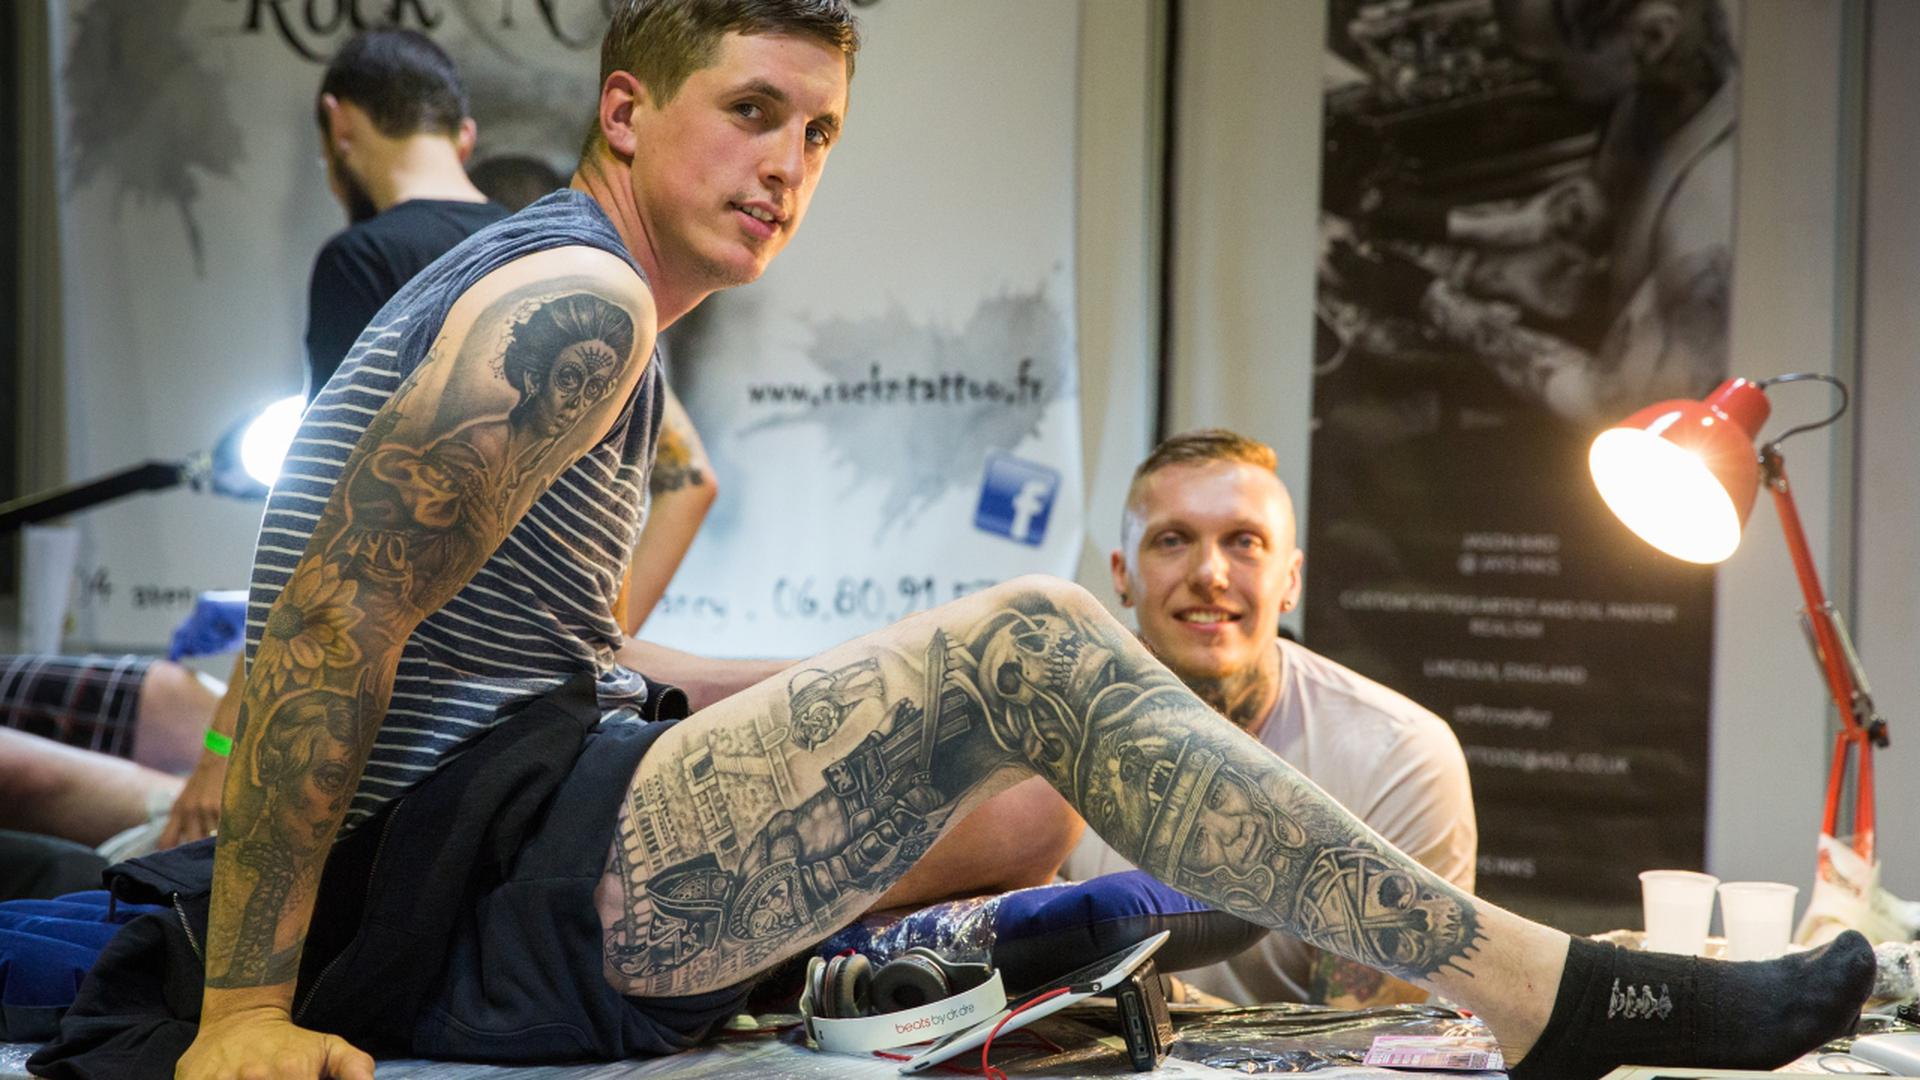 Cinq candidats au tatouage rencontrés sur les tables de «The Storm» qui se déroule durant tout ce week-end à Luxexpo au Kirchberg, nous donnent leur avis.